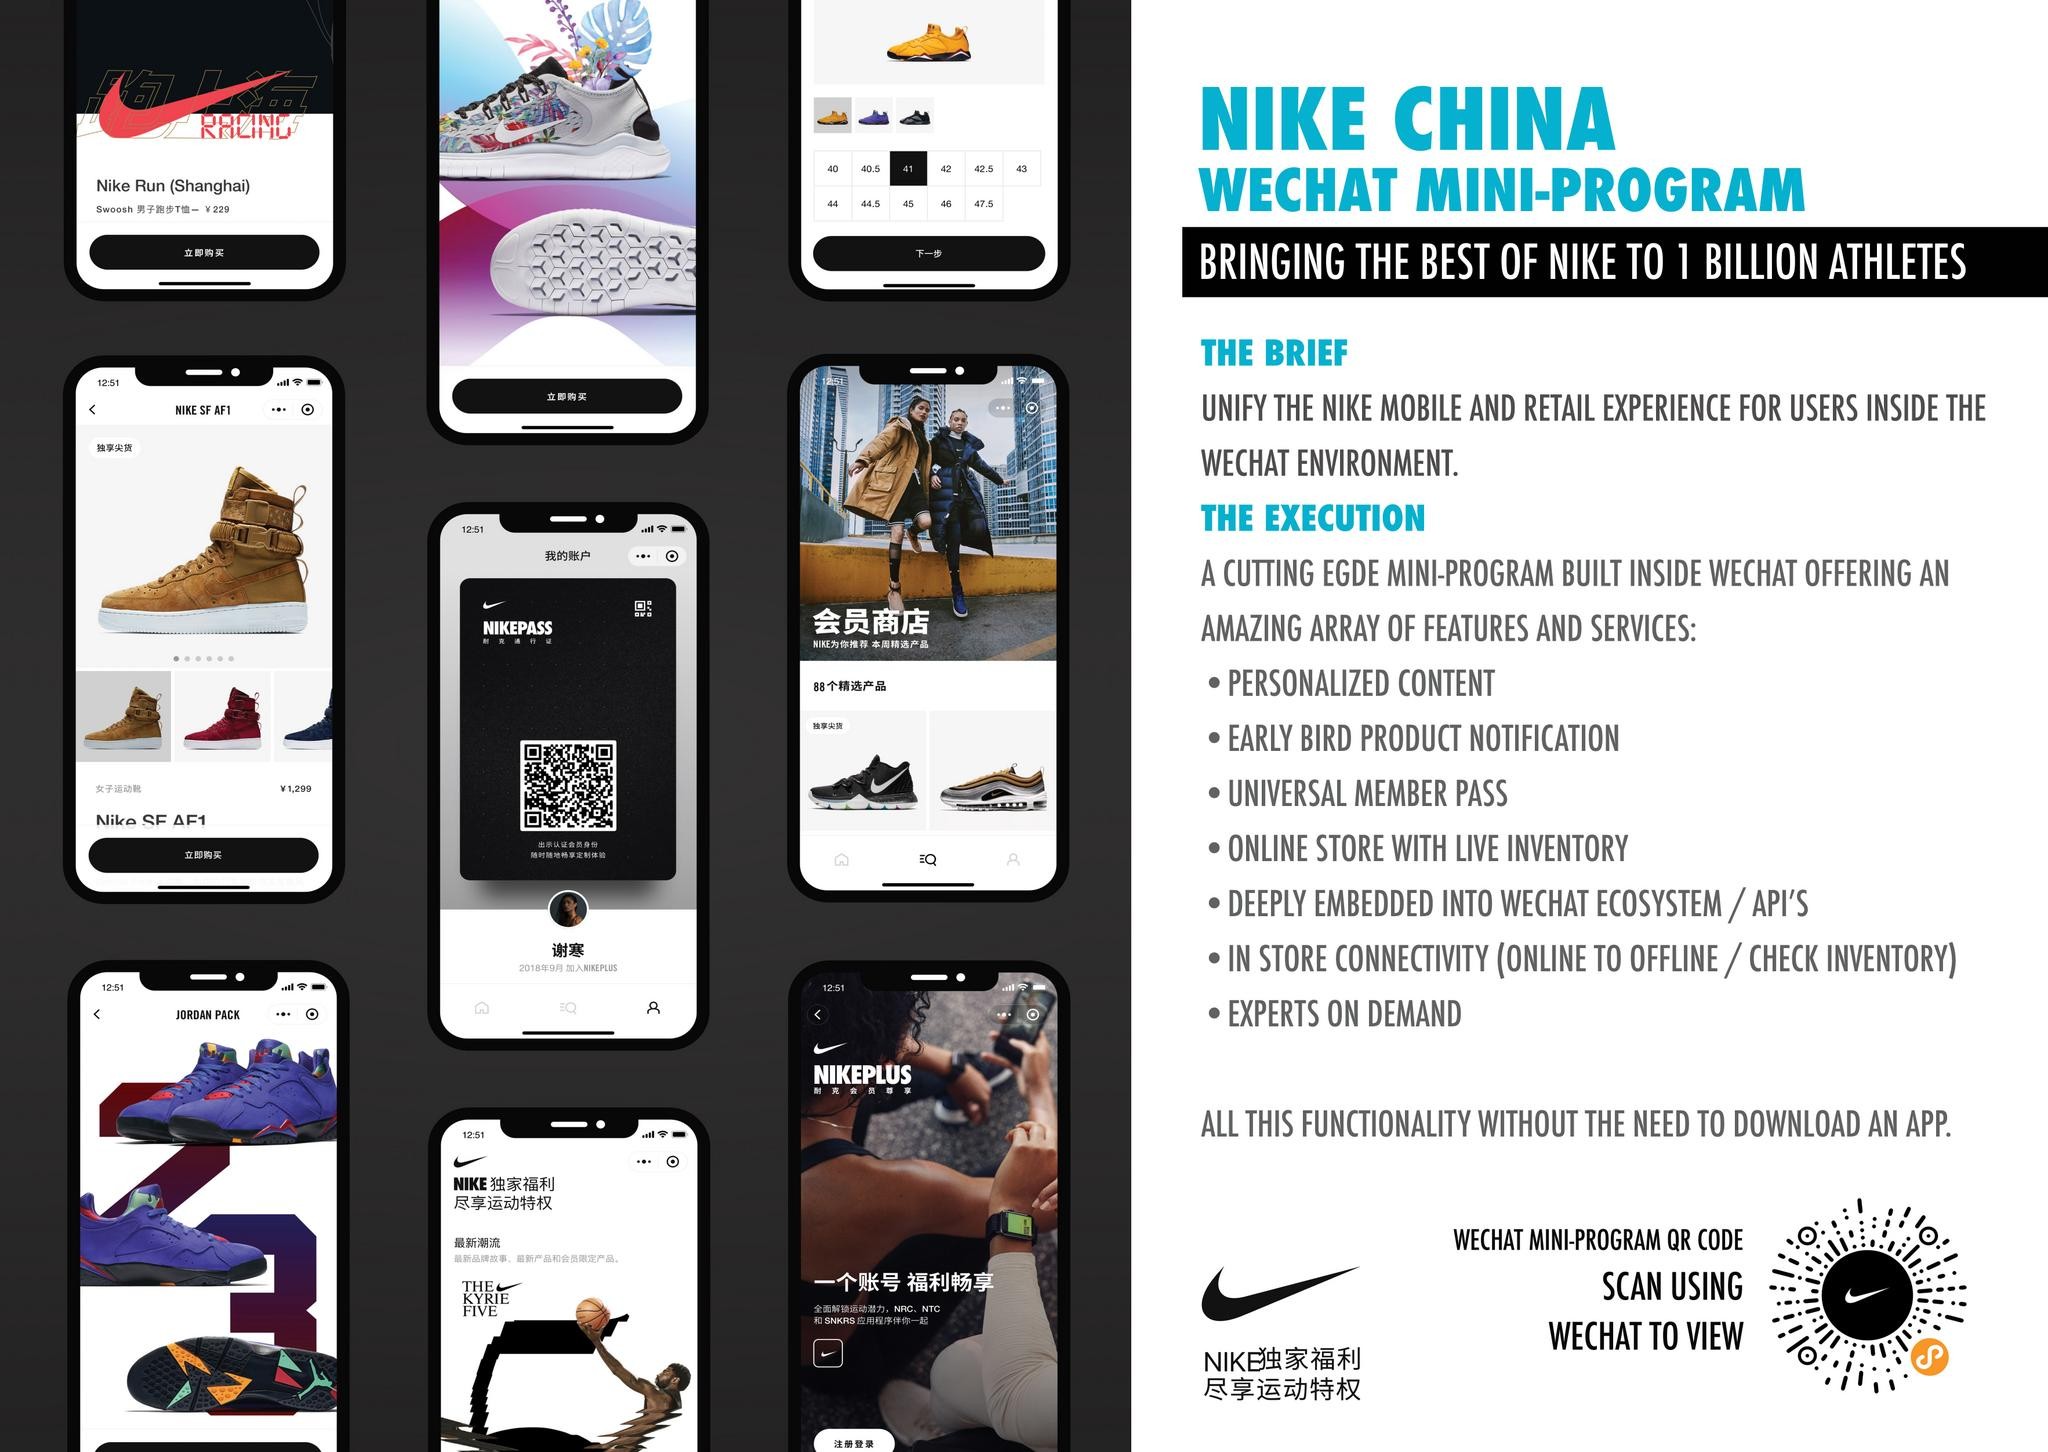 Nike China WeChat Mini-Program